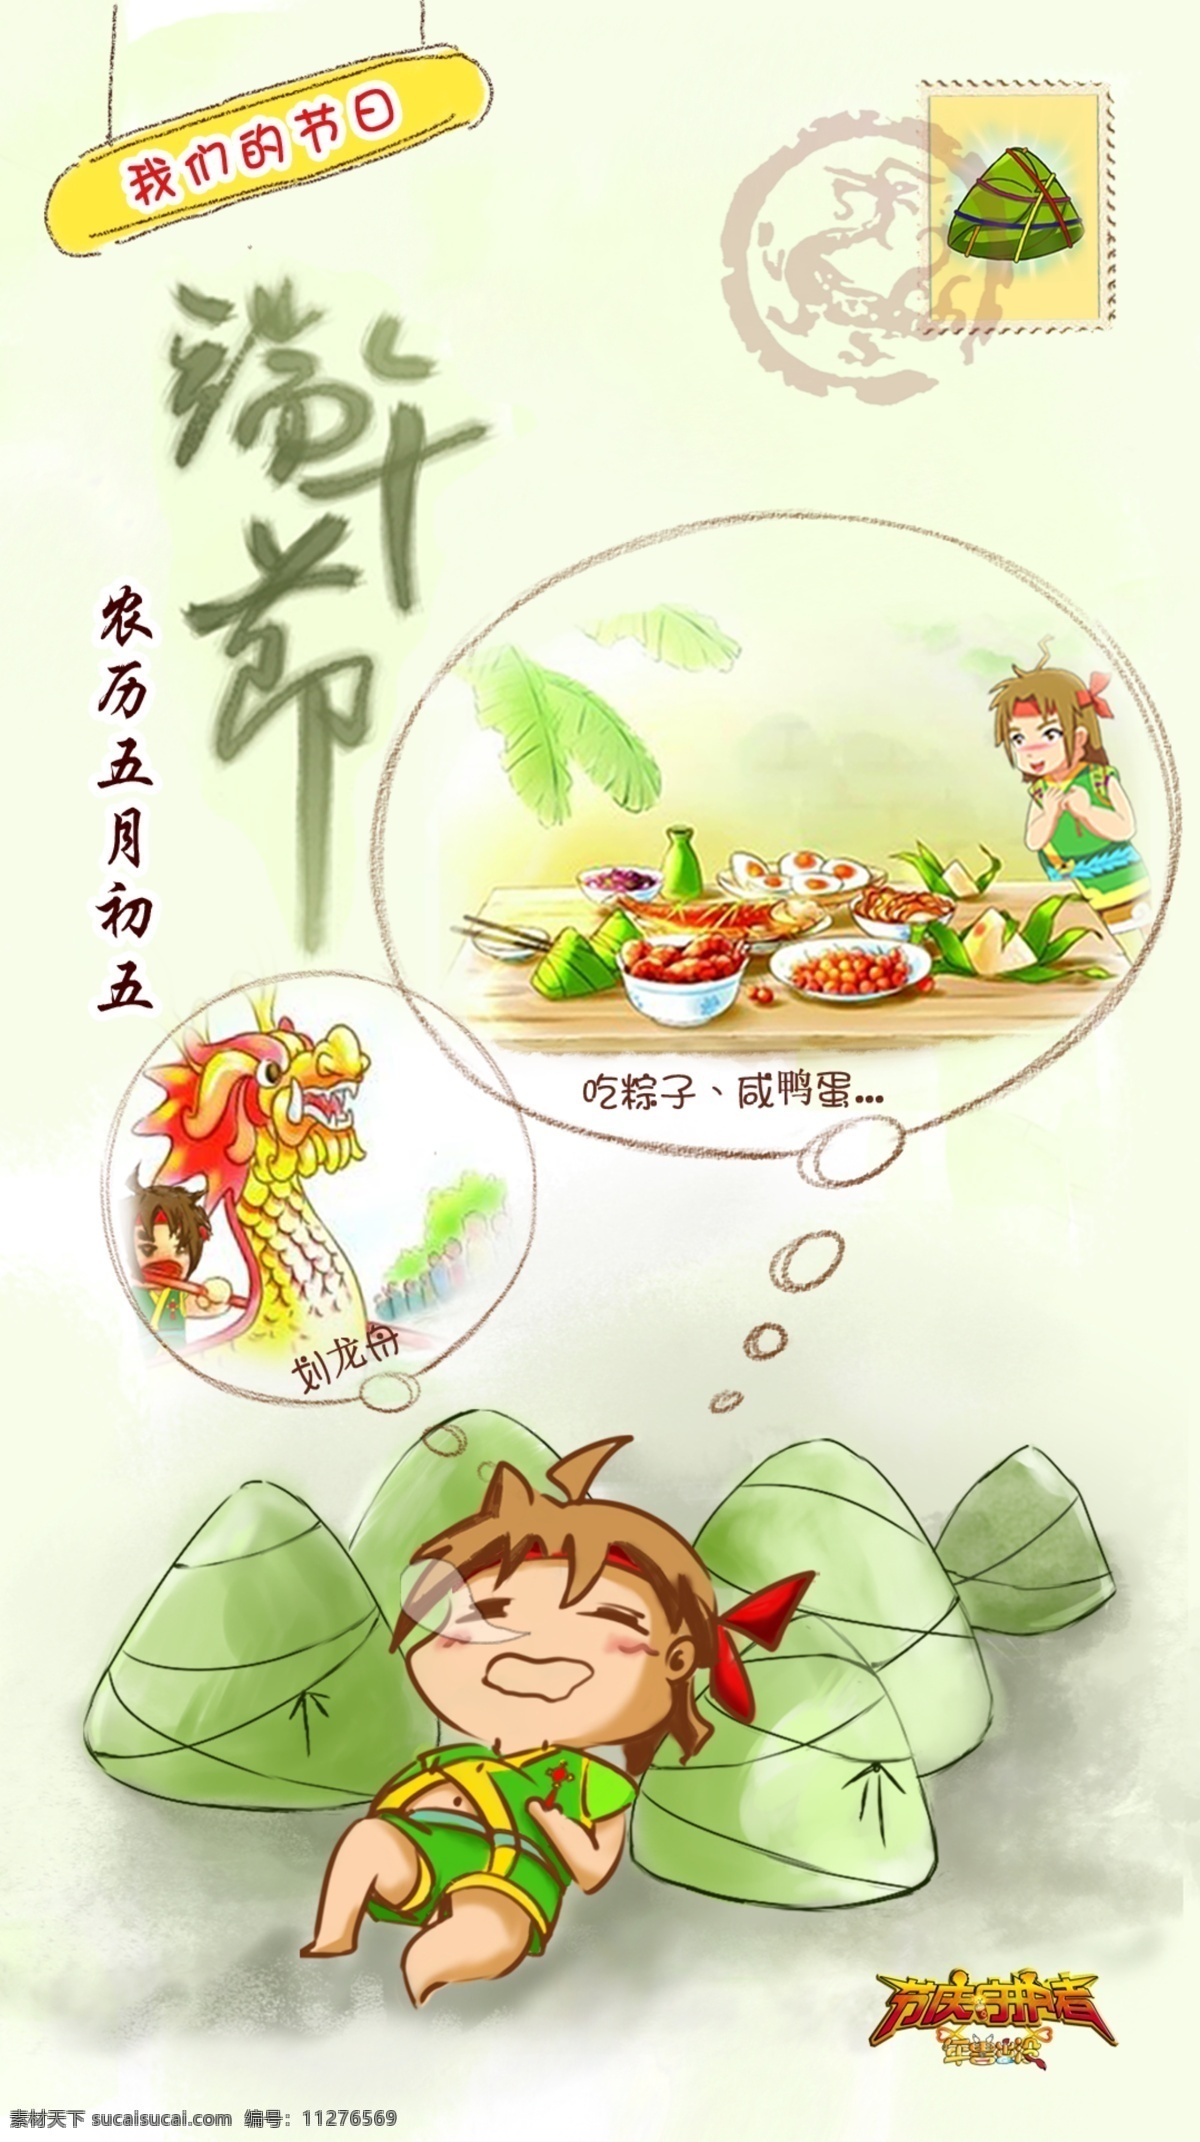 端午节 卡通 插画 卡通插画 插画图片 划龙舟 吃粽子 广告 海报